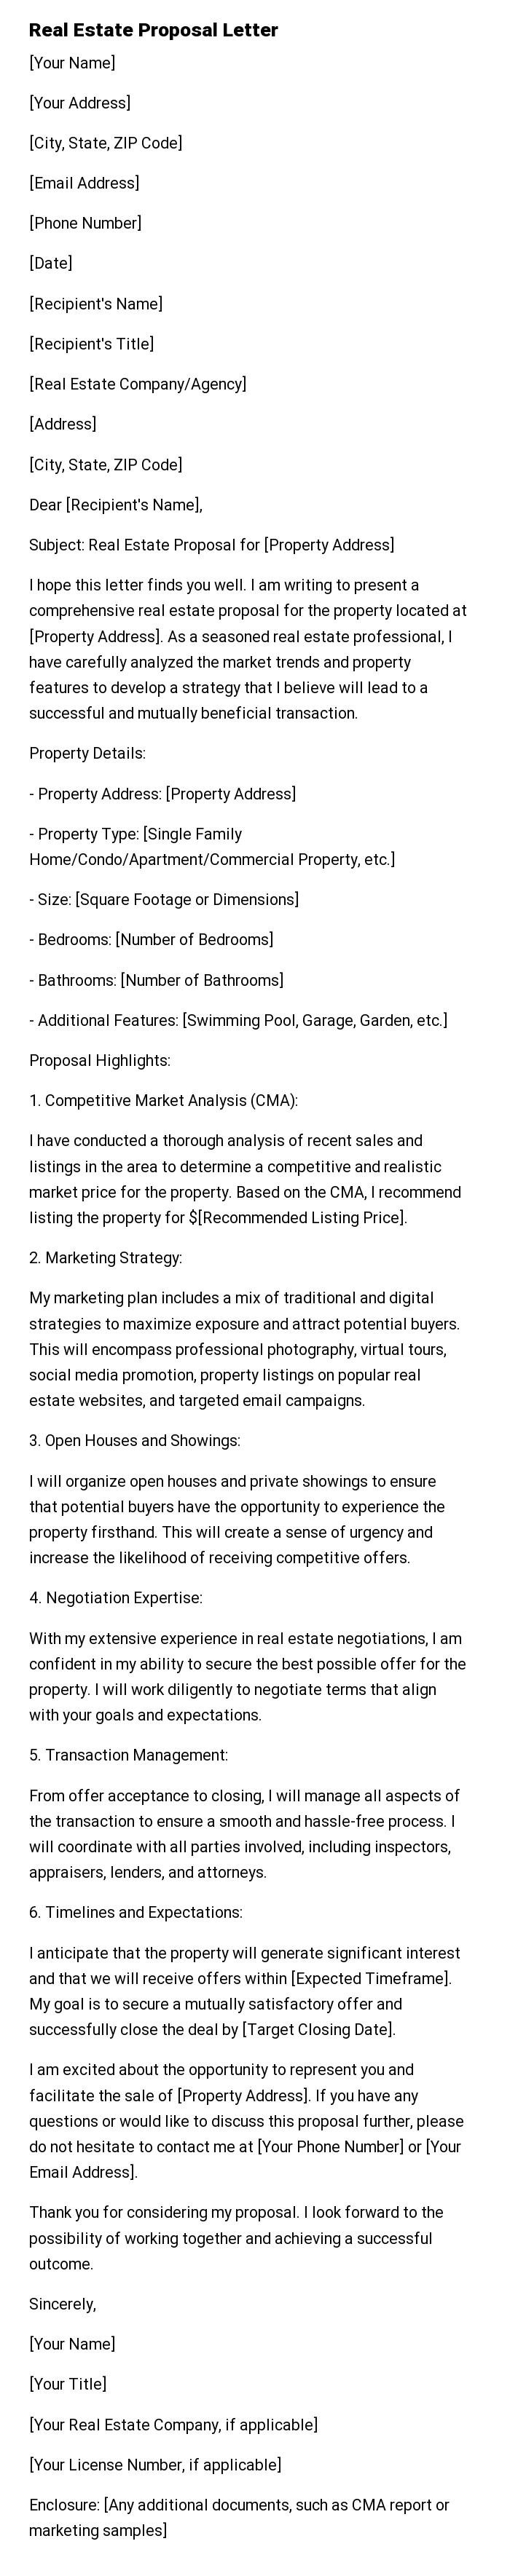 Real Estate Proposal Letter